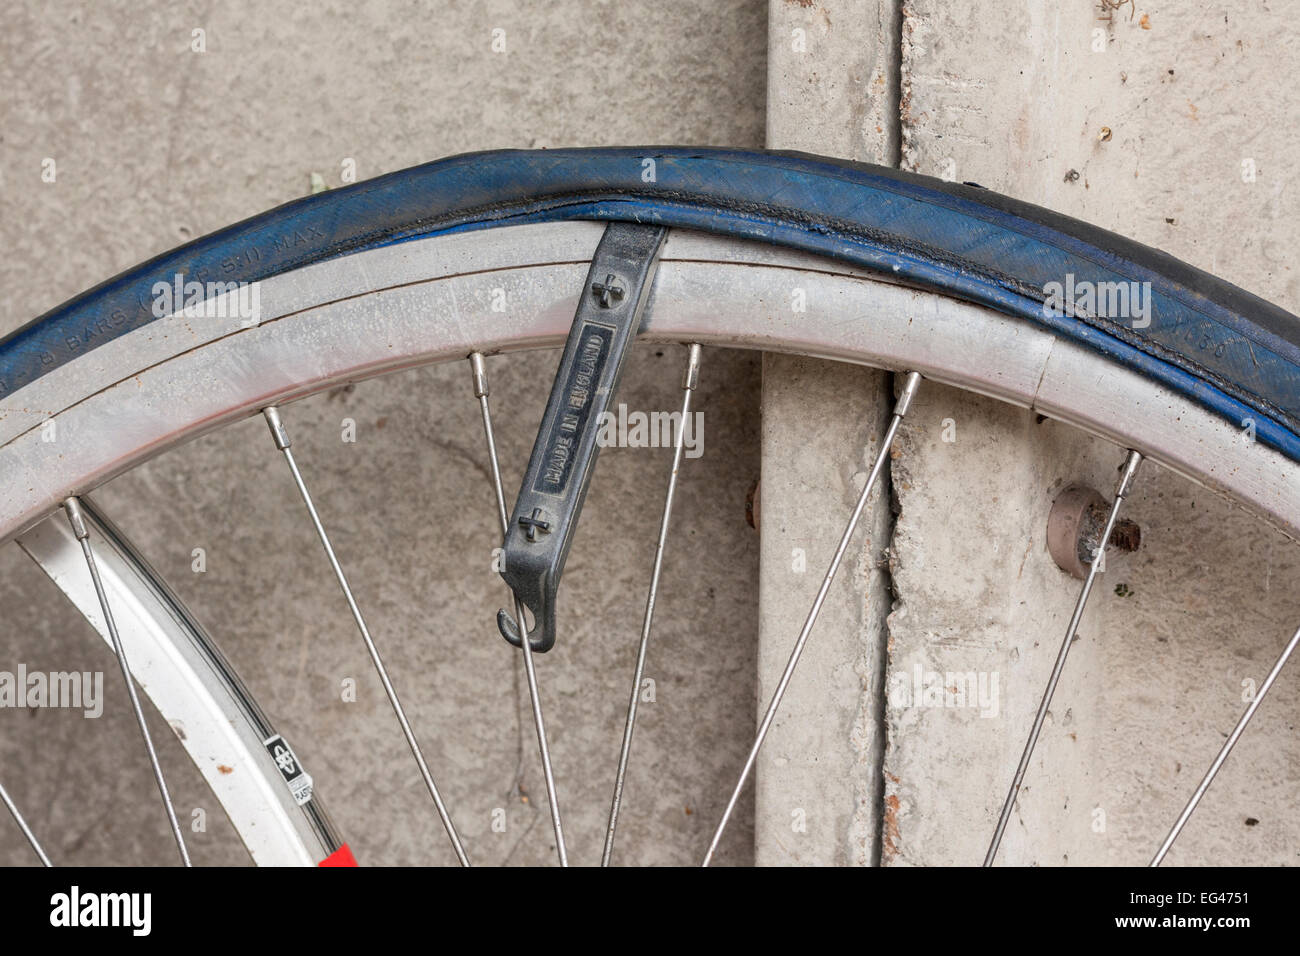 Pneus en place sur roue de bicyclette pour retirer le pneu à l'aide en réparation crevaison Banque D'Images